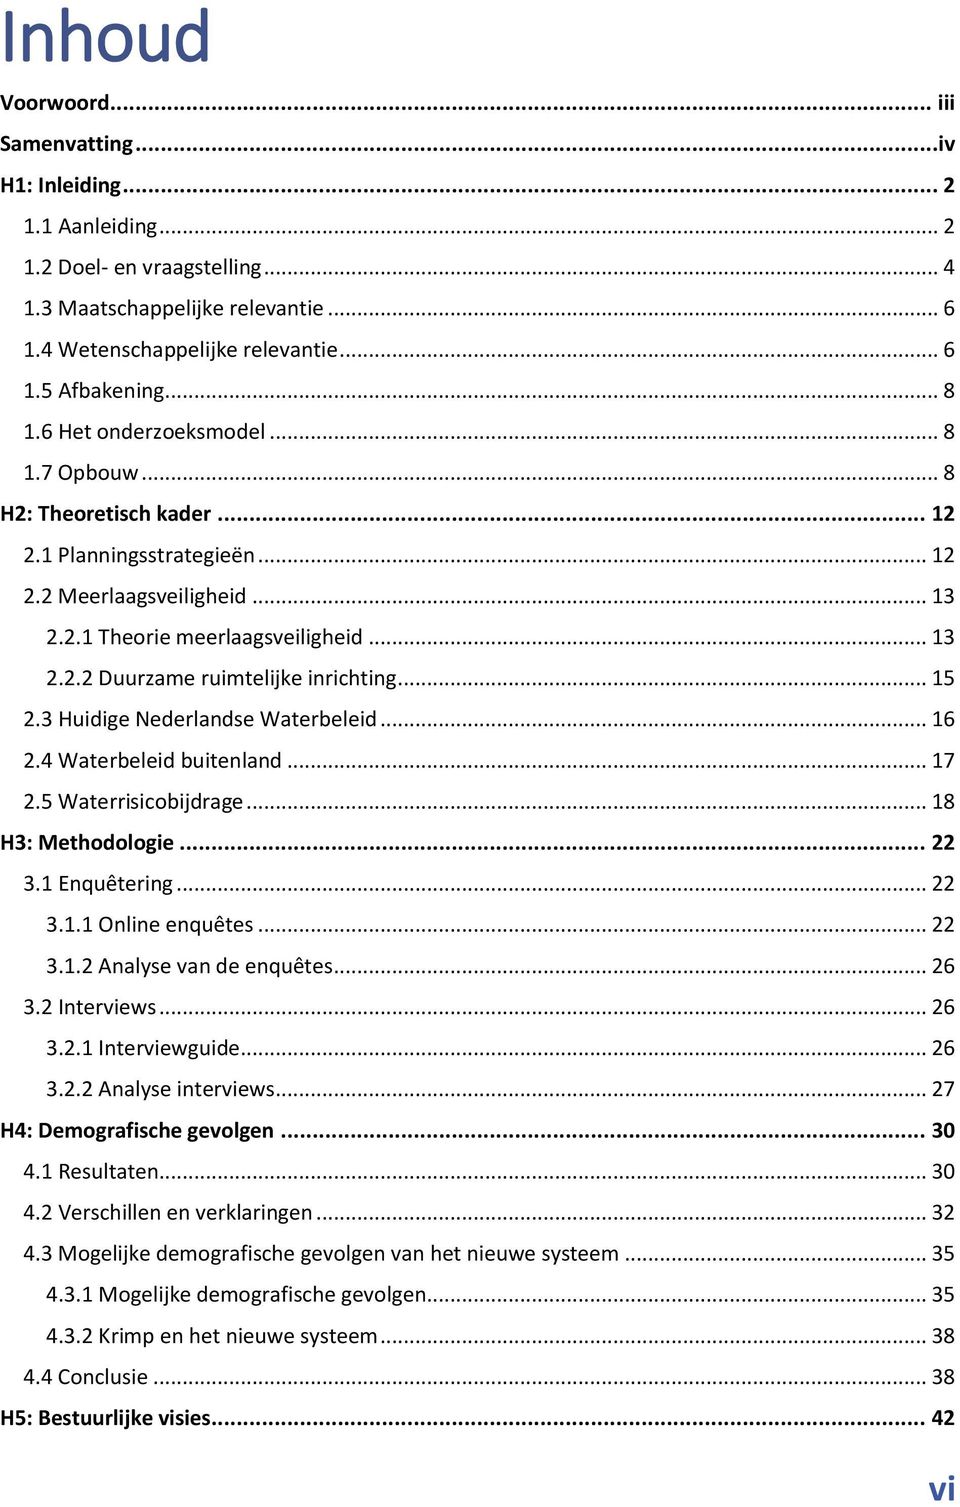 .. 15 2.3 Huidige Nederlandse Waterbeleid... 16 2.4 Waterbeleid buitenland... 17 2.5 Waterrisicobijdrage... 18 H3: Methodologie... 22 3.1 Enquêtering... 22 3.1.1 Online enquêtes... 22 3.1.2 Analyse van de enquêtes.